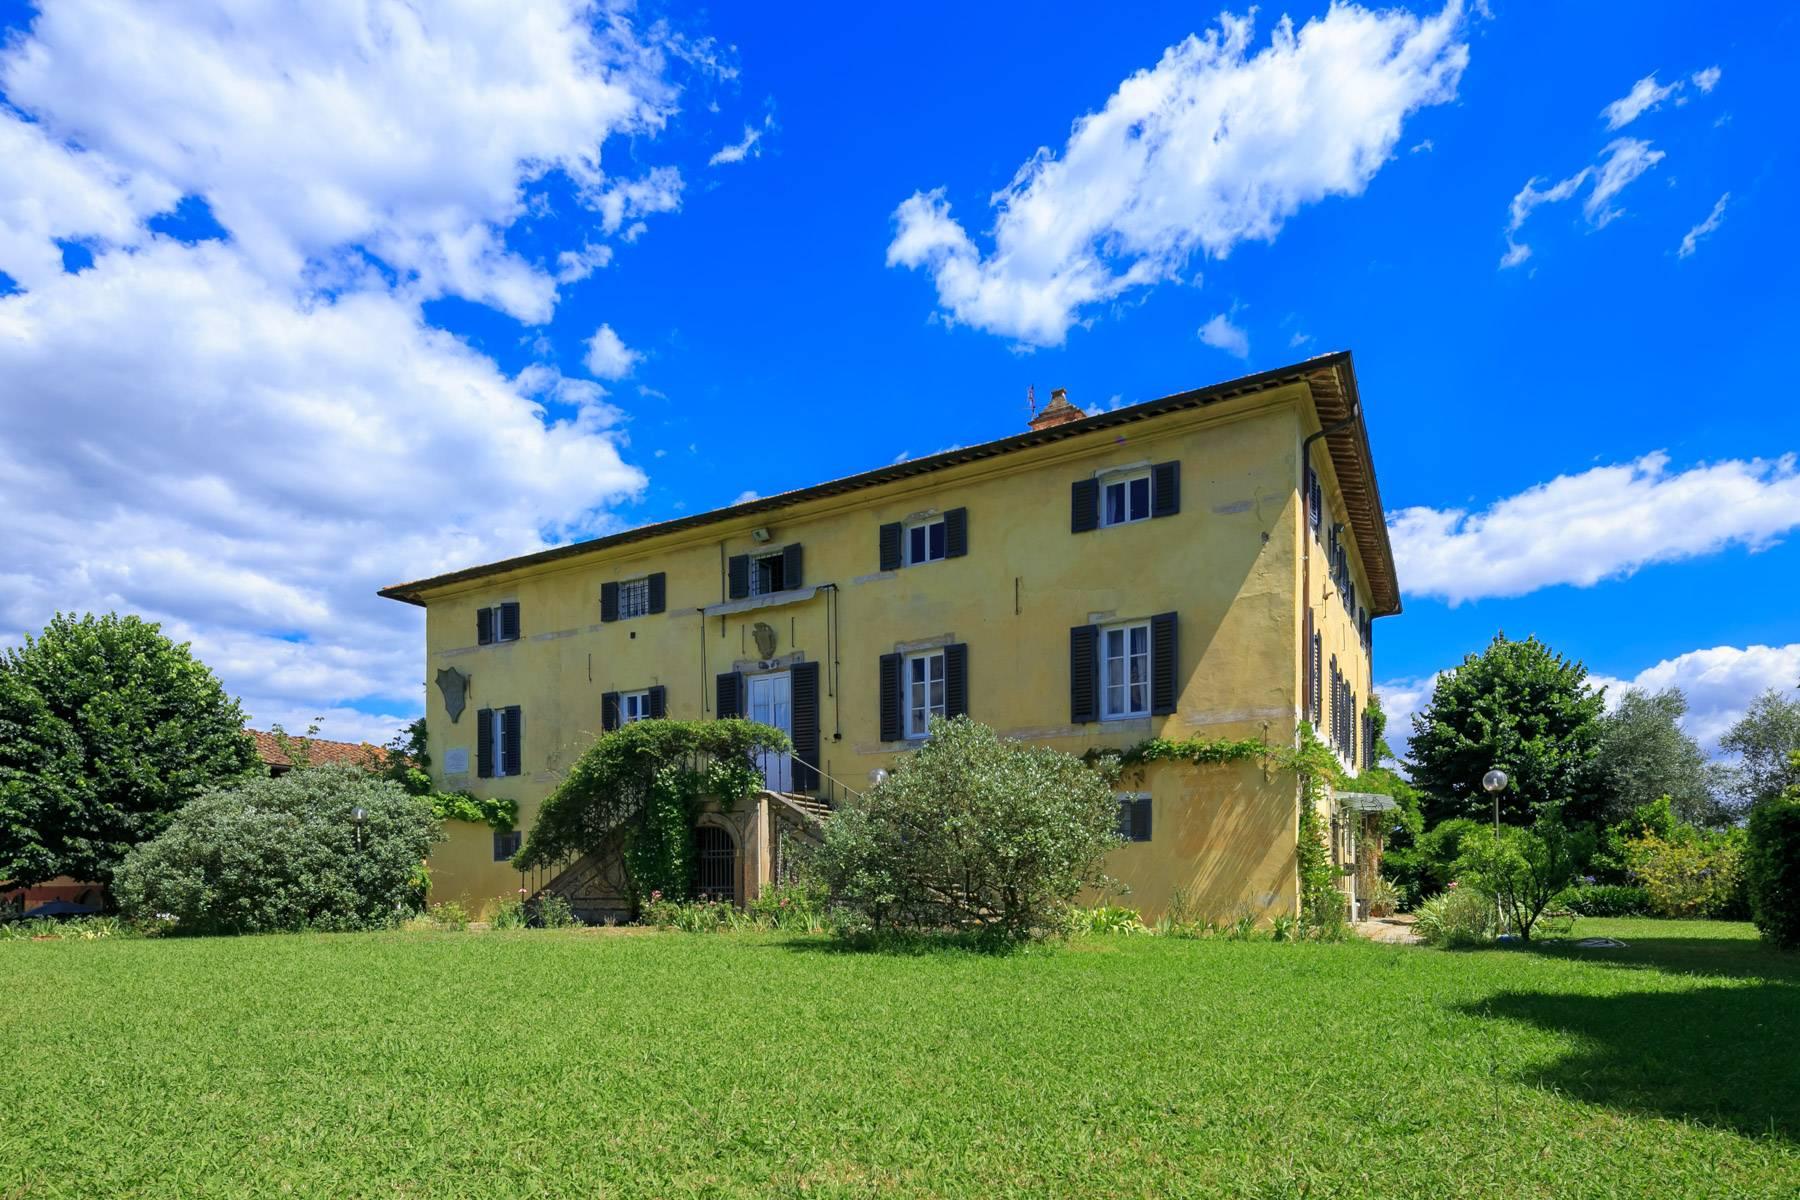 Wunderschönes Bauernhaus aus 1700 auf den Hügeln von Lucca - 19